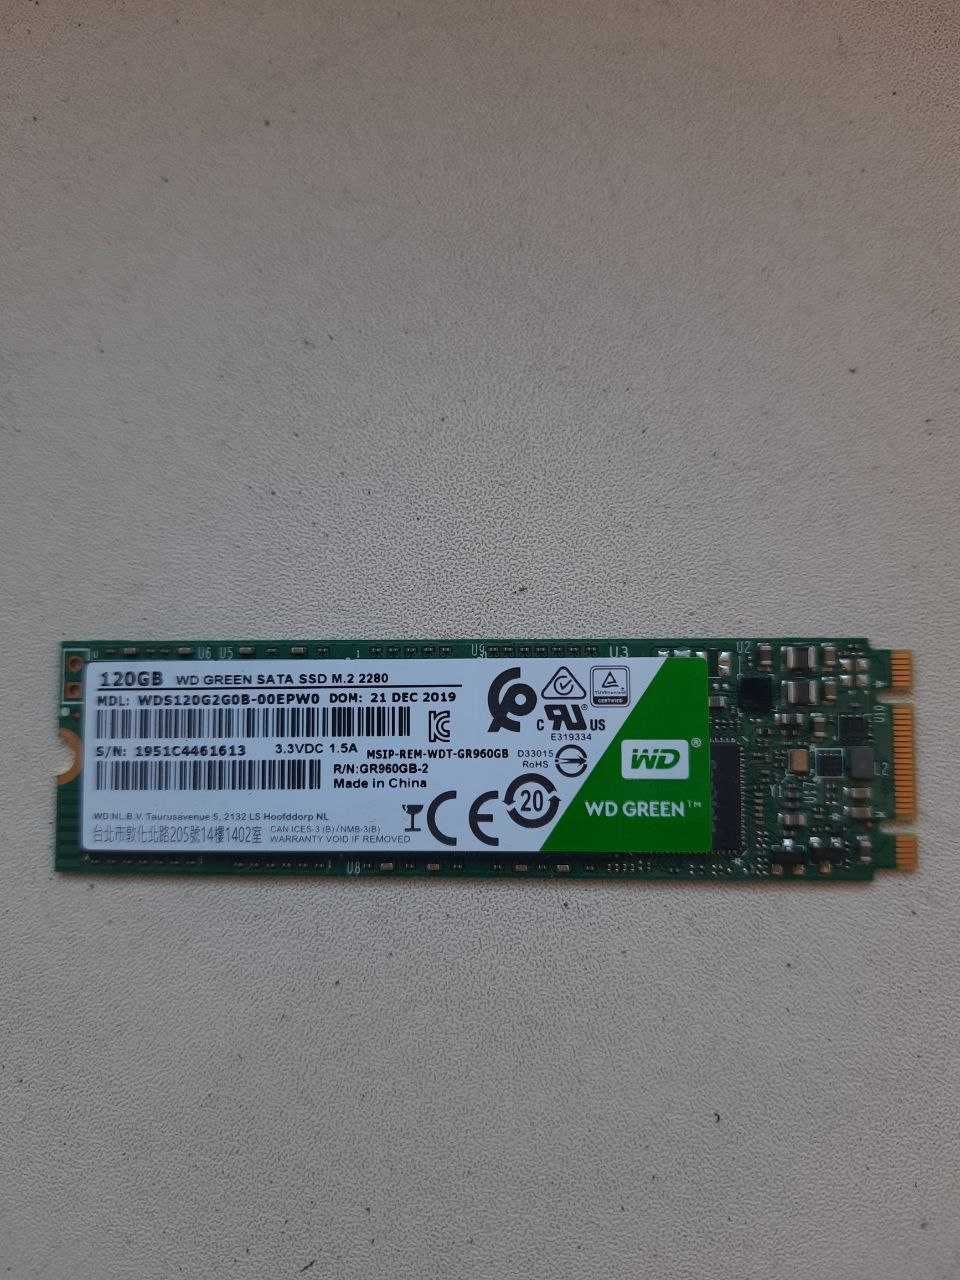 SSD m.2 WD green 2280